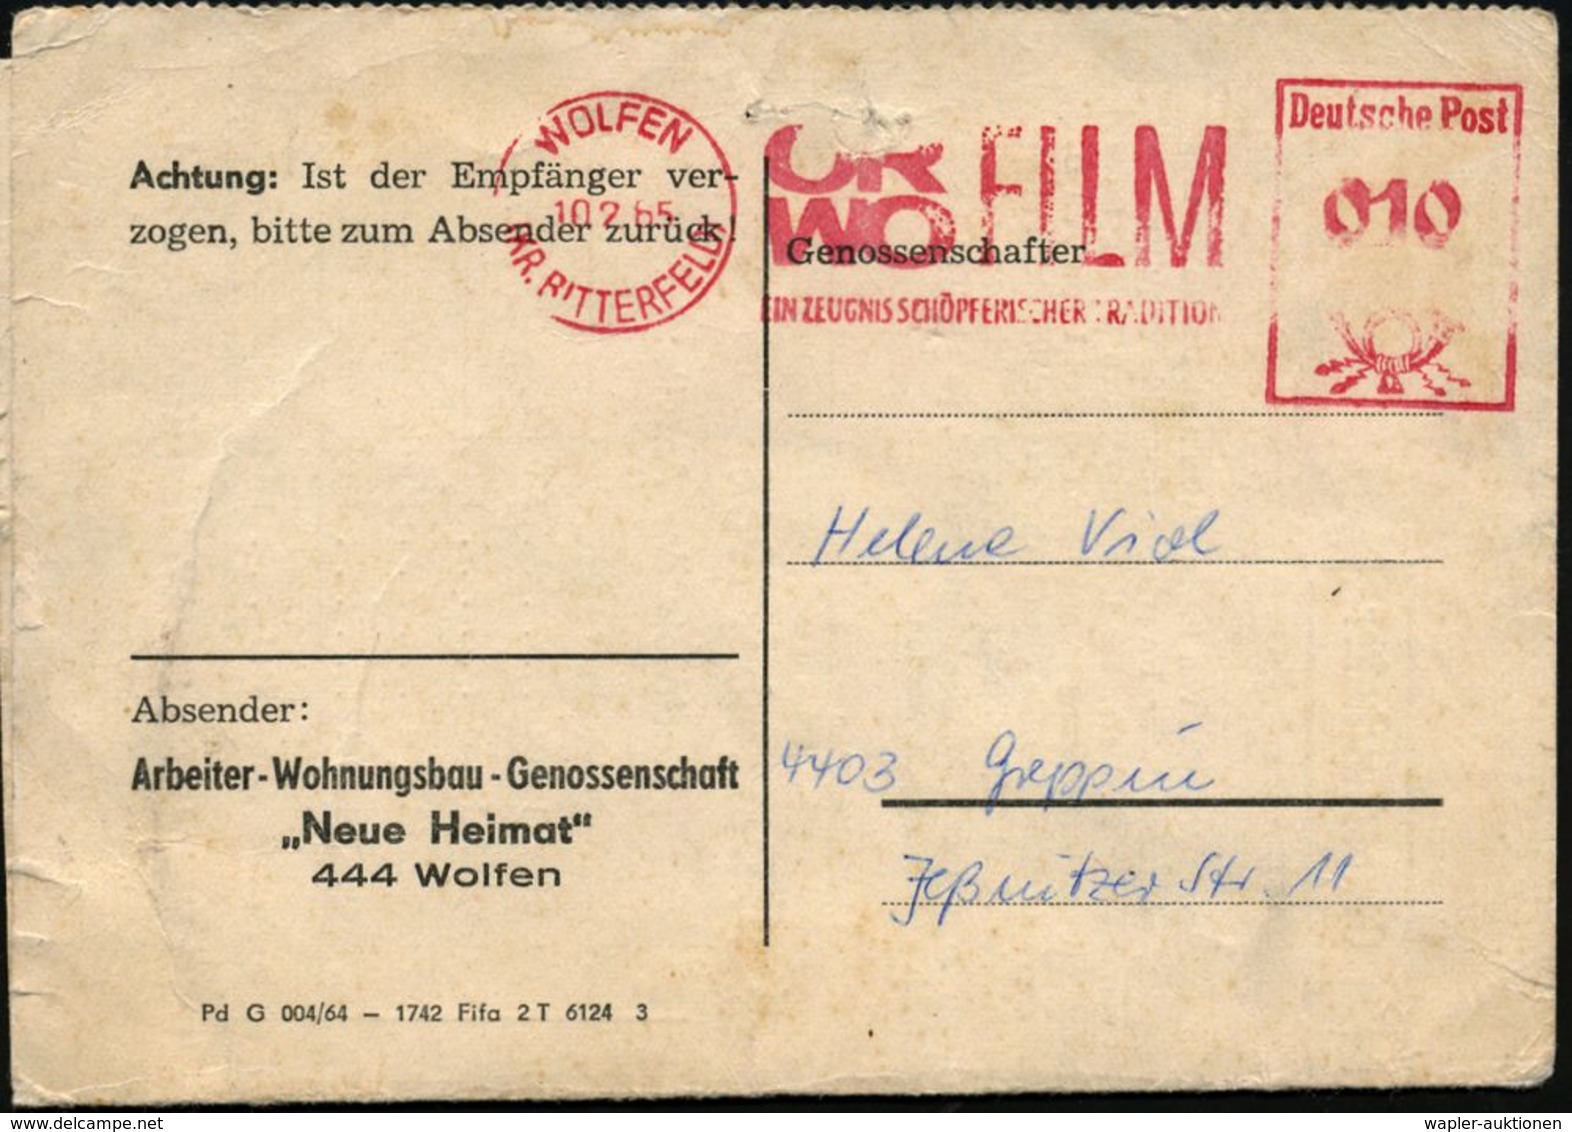 FOTOGRAFIE / KAMERAS / FOTOINDUSTRIE : WOLFEN/ (KR.BITTERFELD)ORWO FILM/ EIN ZEUGNIS SCHÖPFERISCHER TRADITION 1965 (10.2 - Fotografie